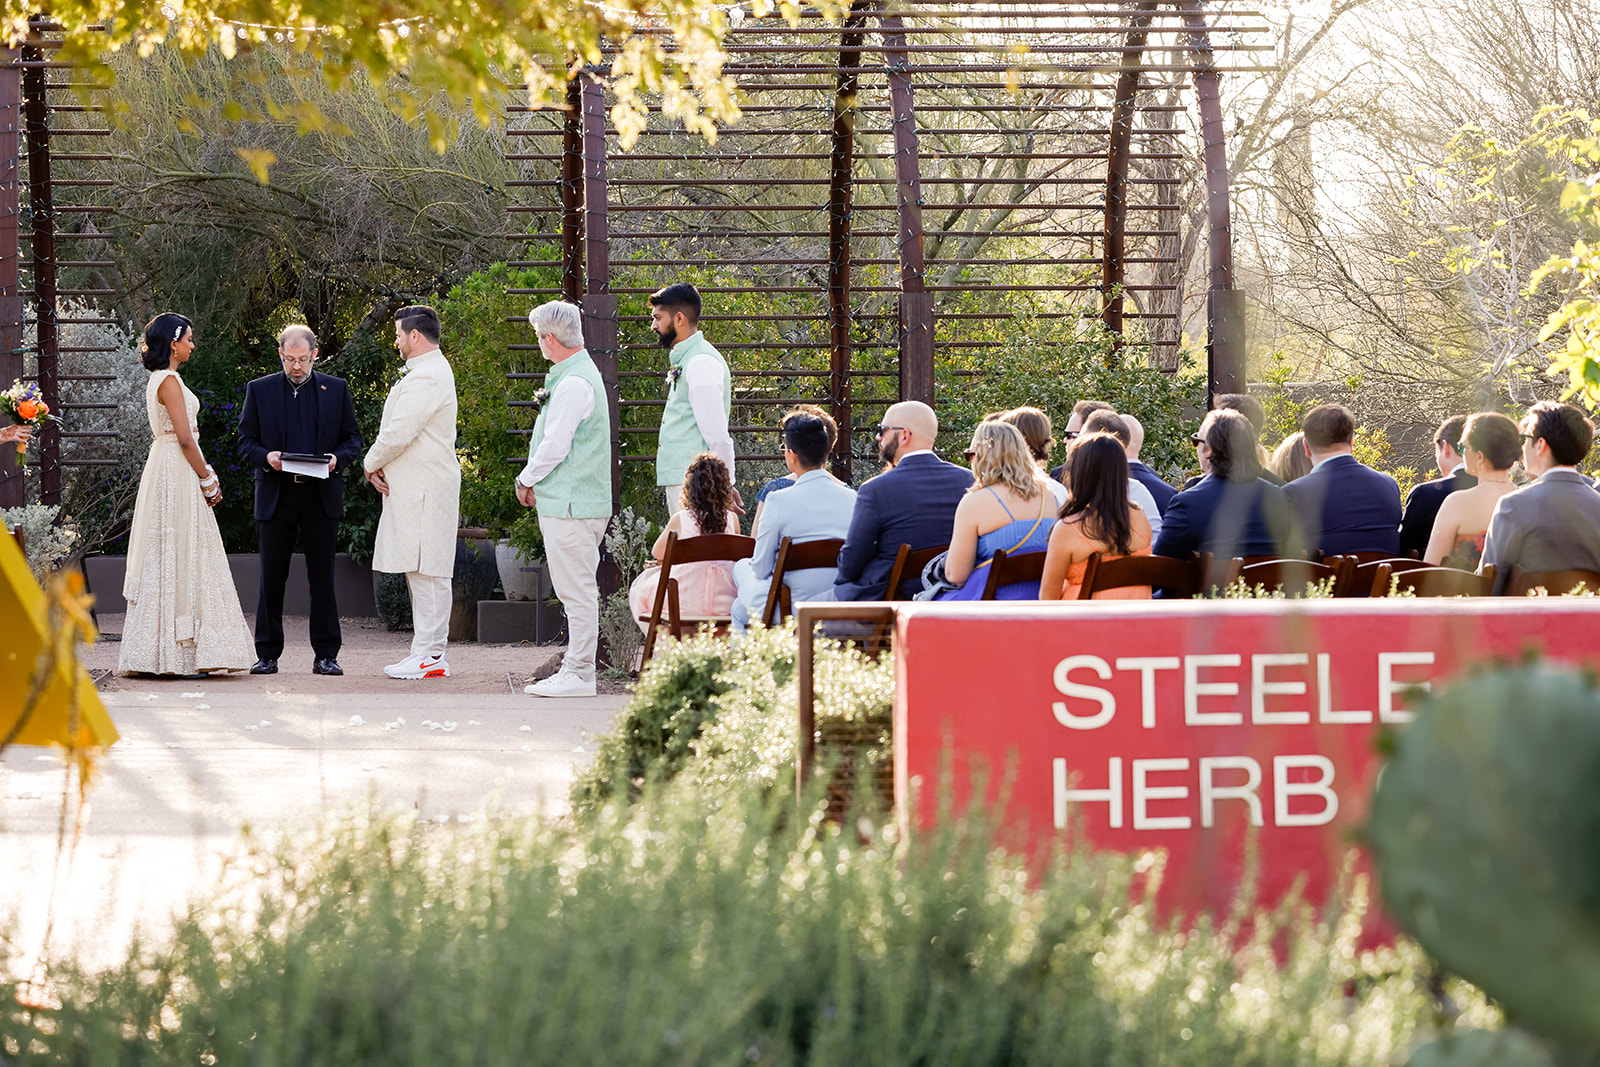 Luxury destination Indian wedding at Steele Herb Garden at the Desert Botanical Garden in Phoenix, Arizona